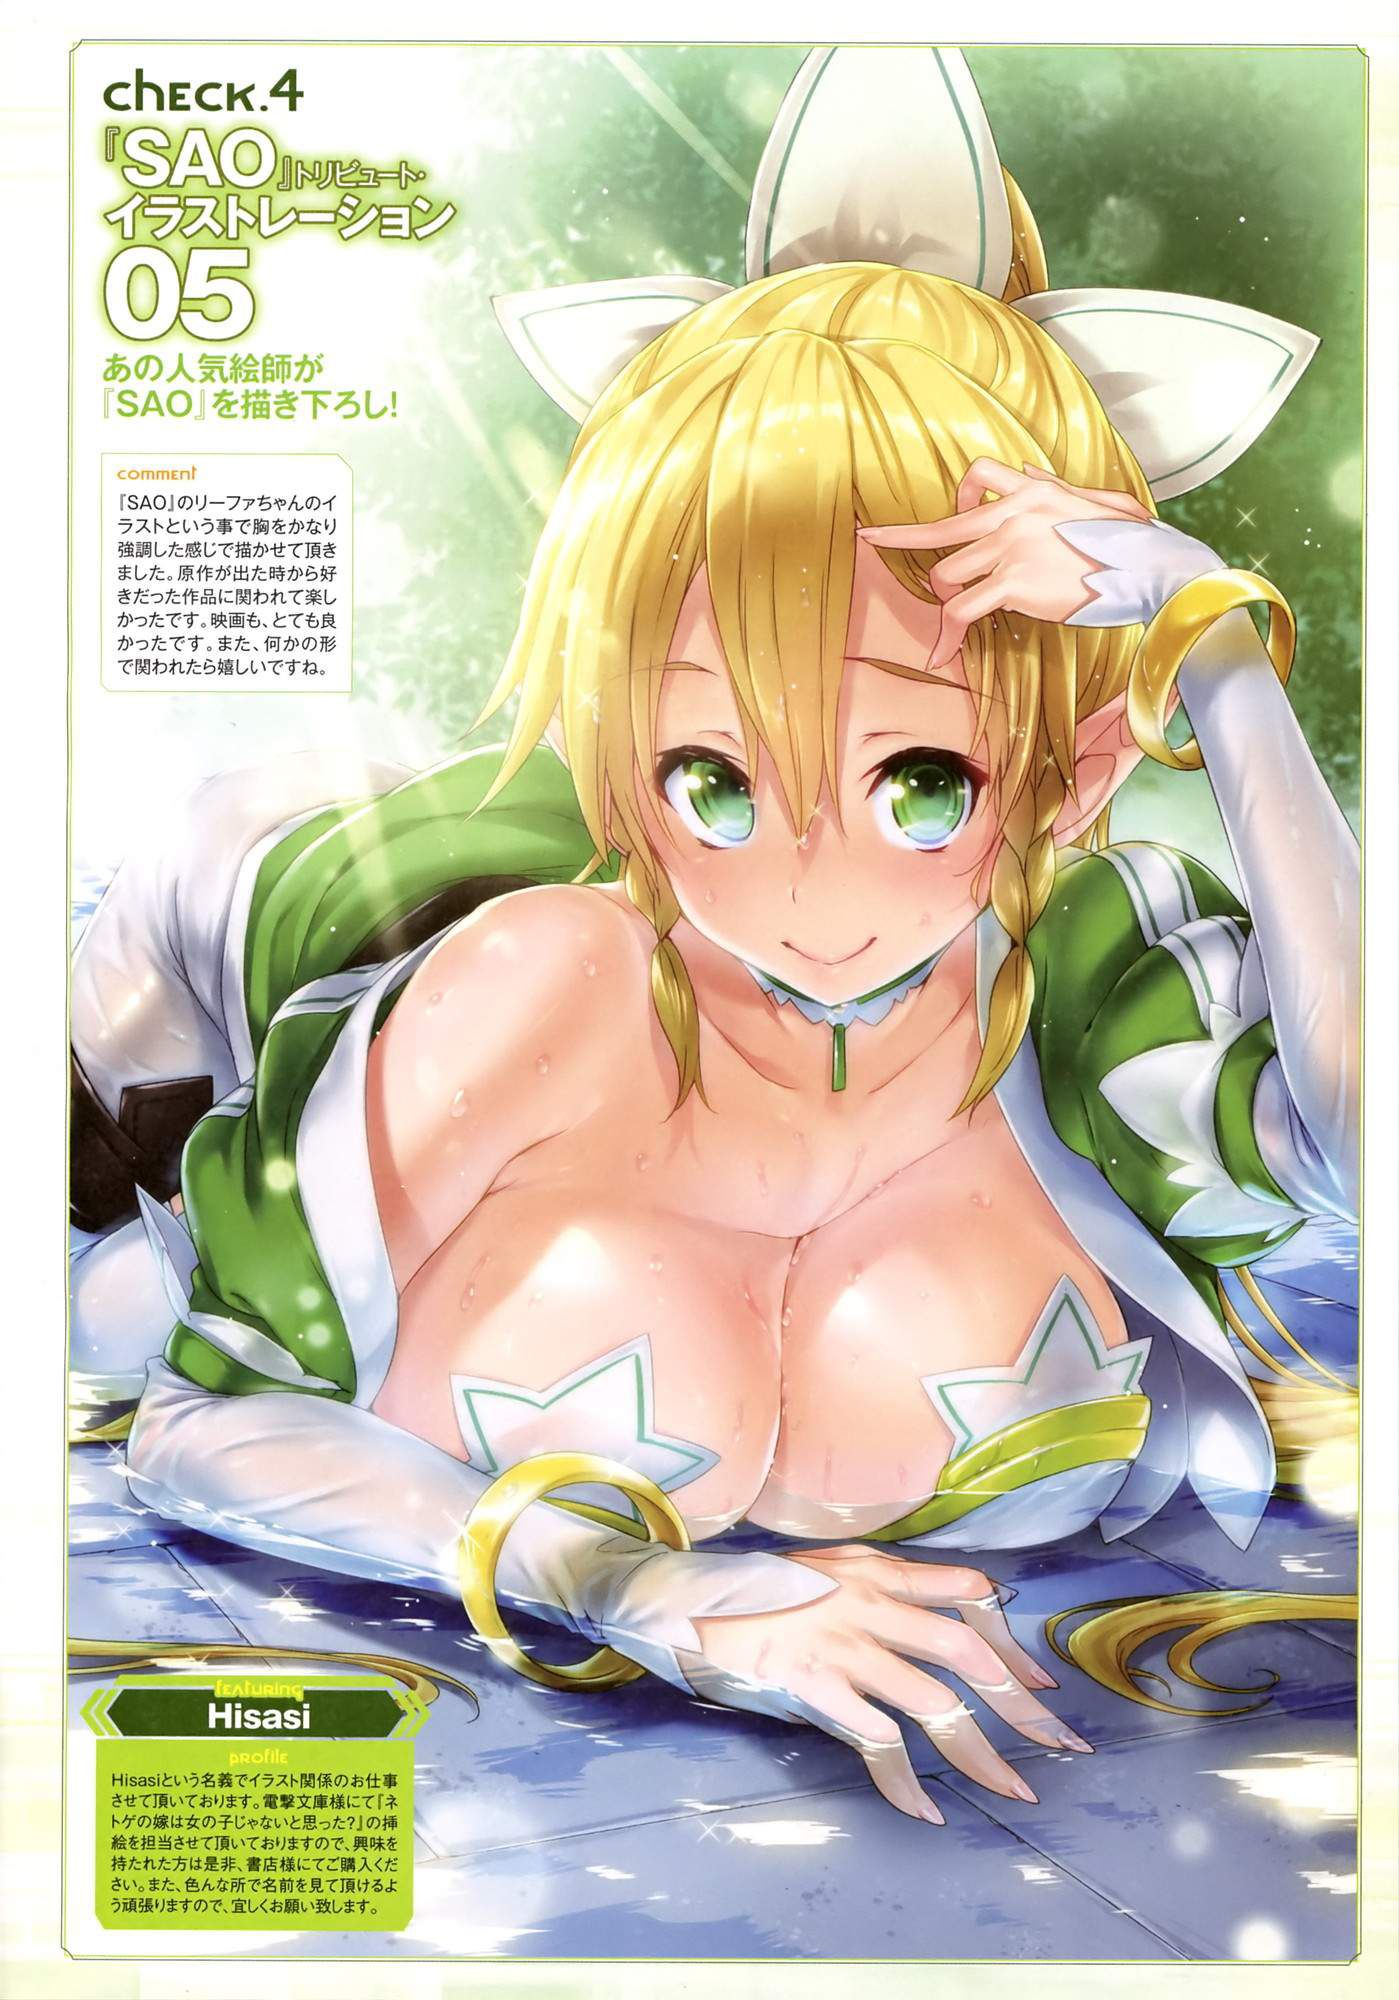 [Sword Art Online] (Kirigaya suguha) Erotic &amp; Moe Image ⑧ [SAO] 1